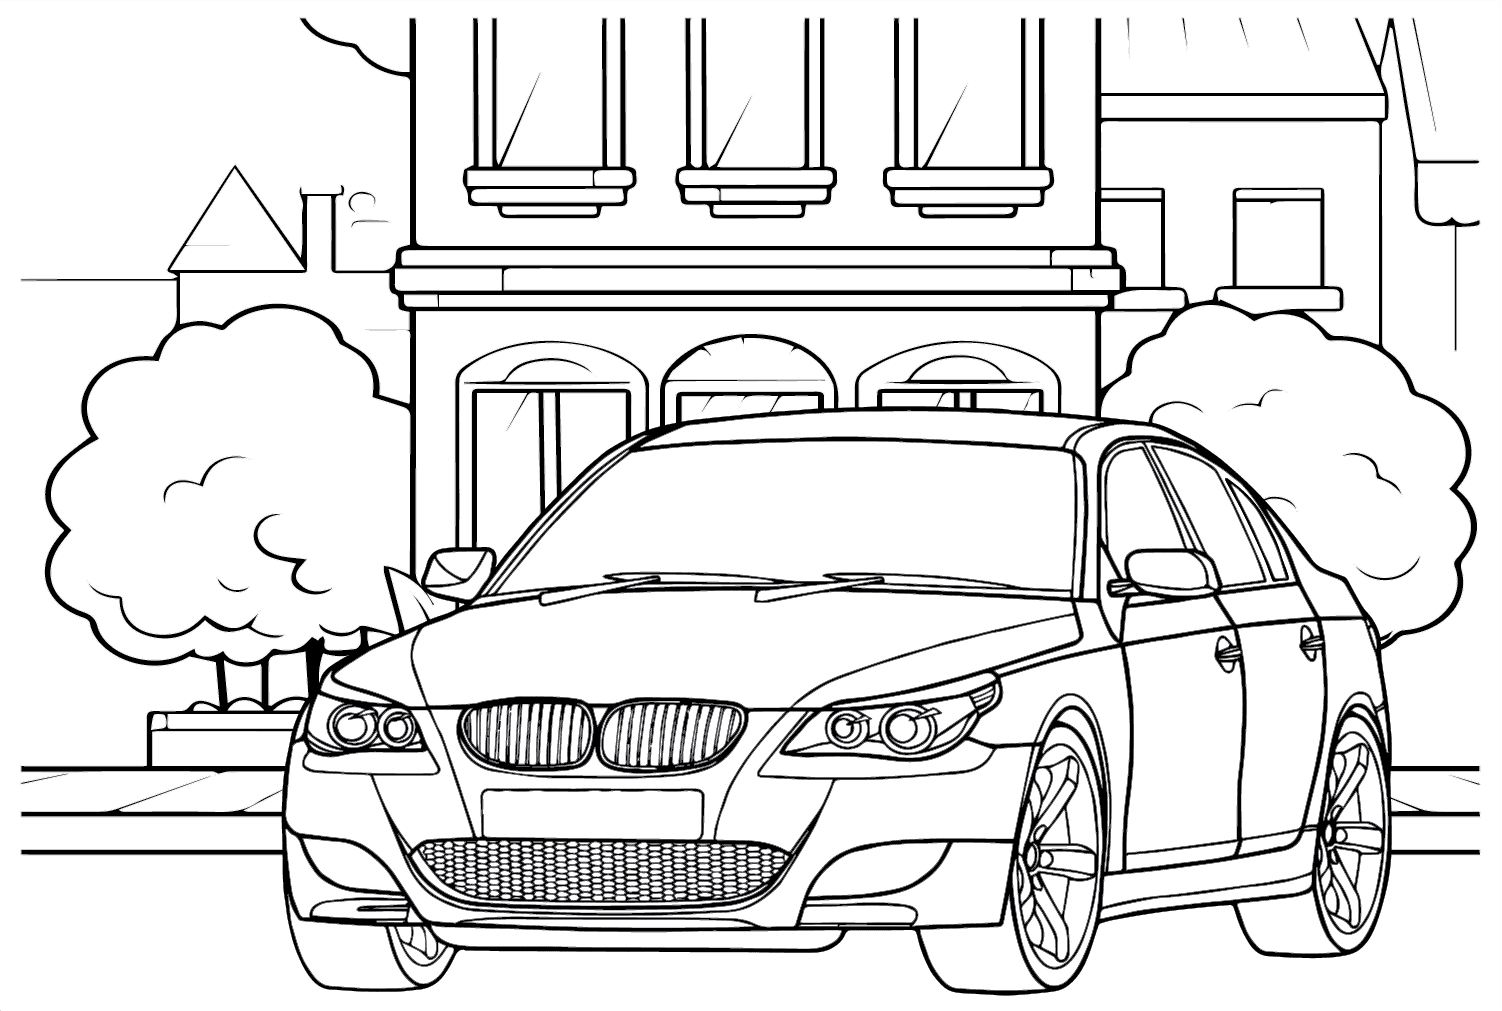 Раскраска BMW m5 e60. Раскраска БМВ м5. БМВ 5 раскраска. Раскраска БМВ х6. Распечатать бмв м5